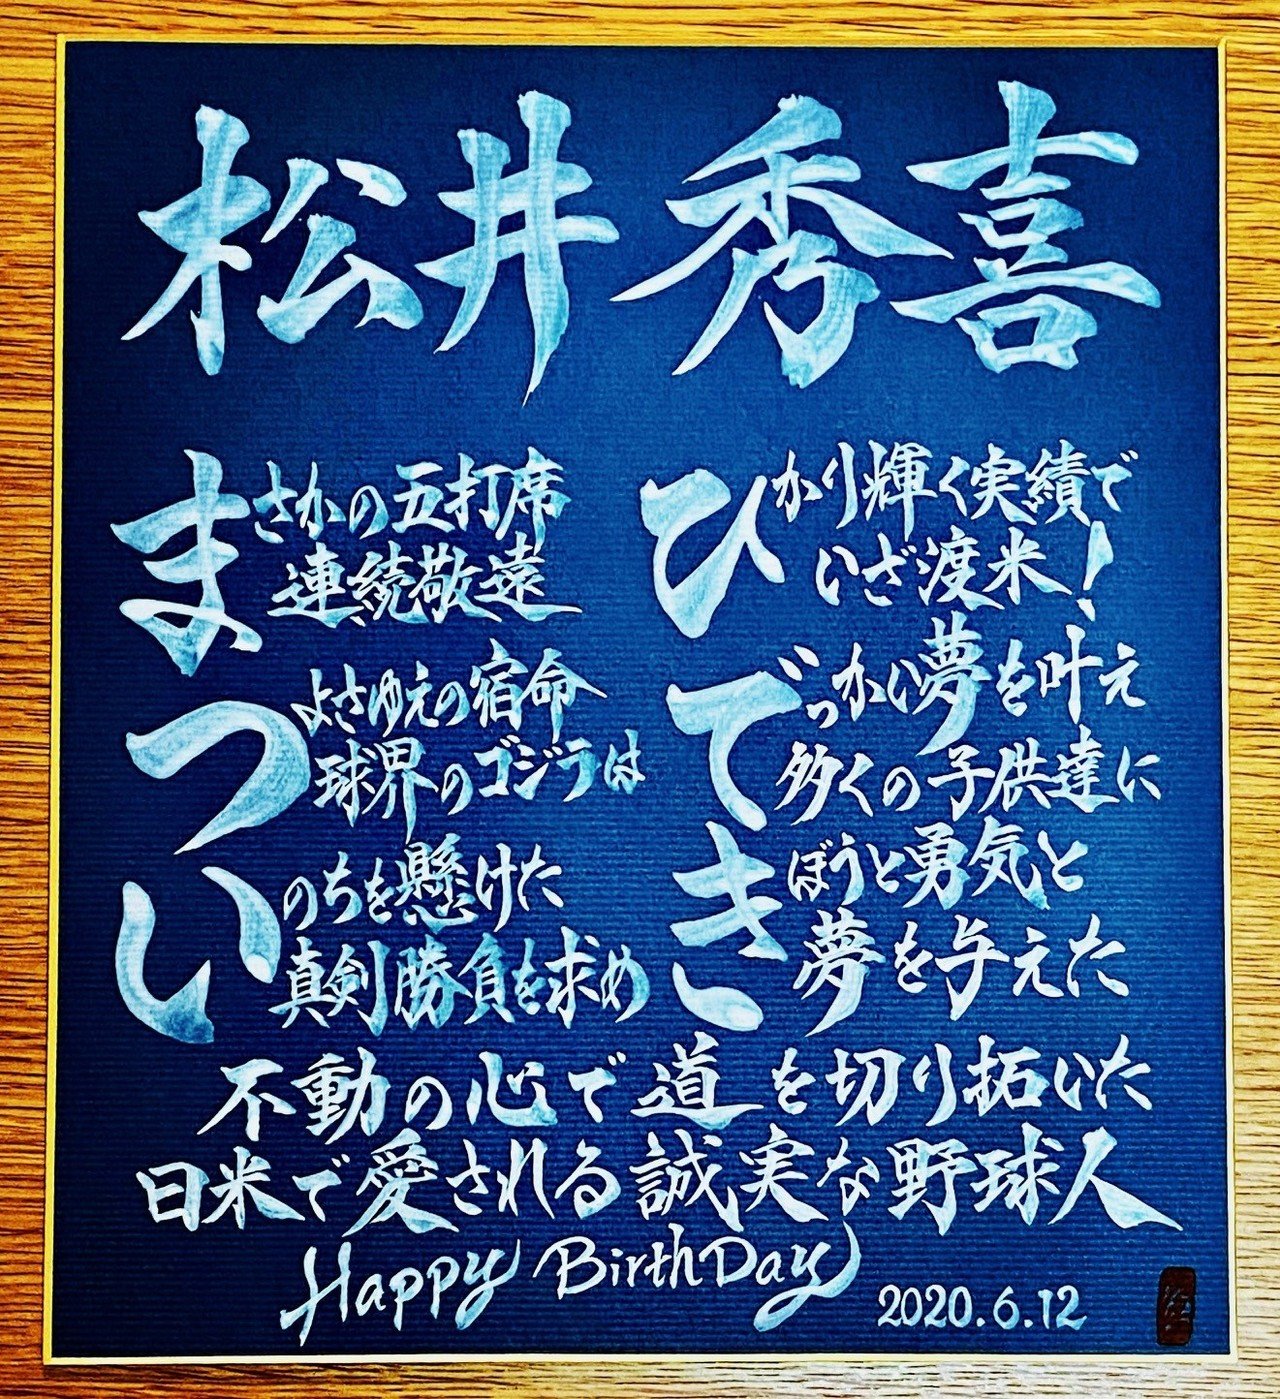 Hbdお名前ポエム 6 12 松井秀喜さん お誕生日おめでとうございます 書き心 白鳥正人 Note